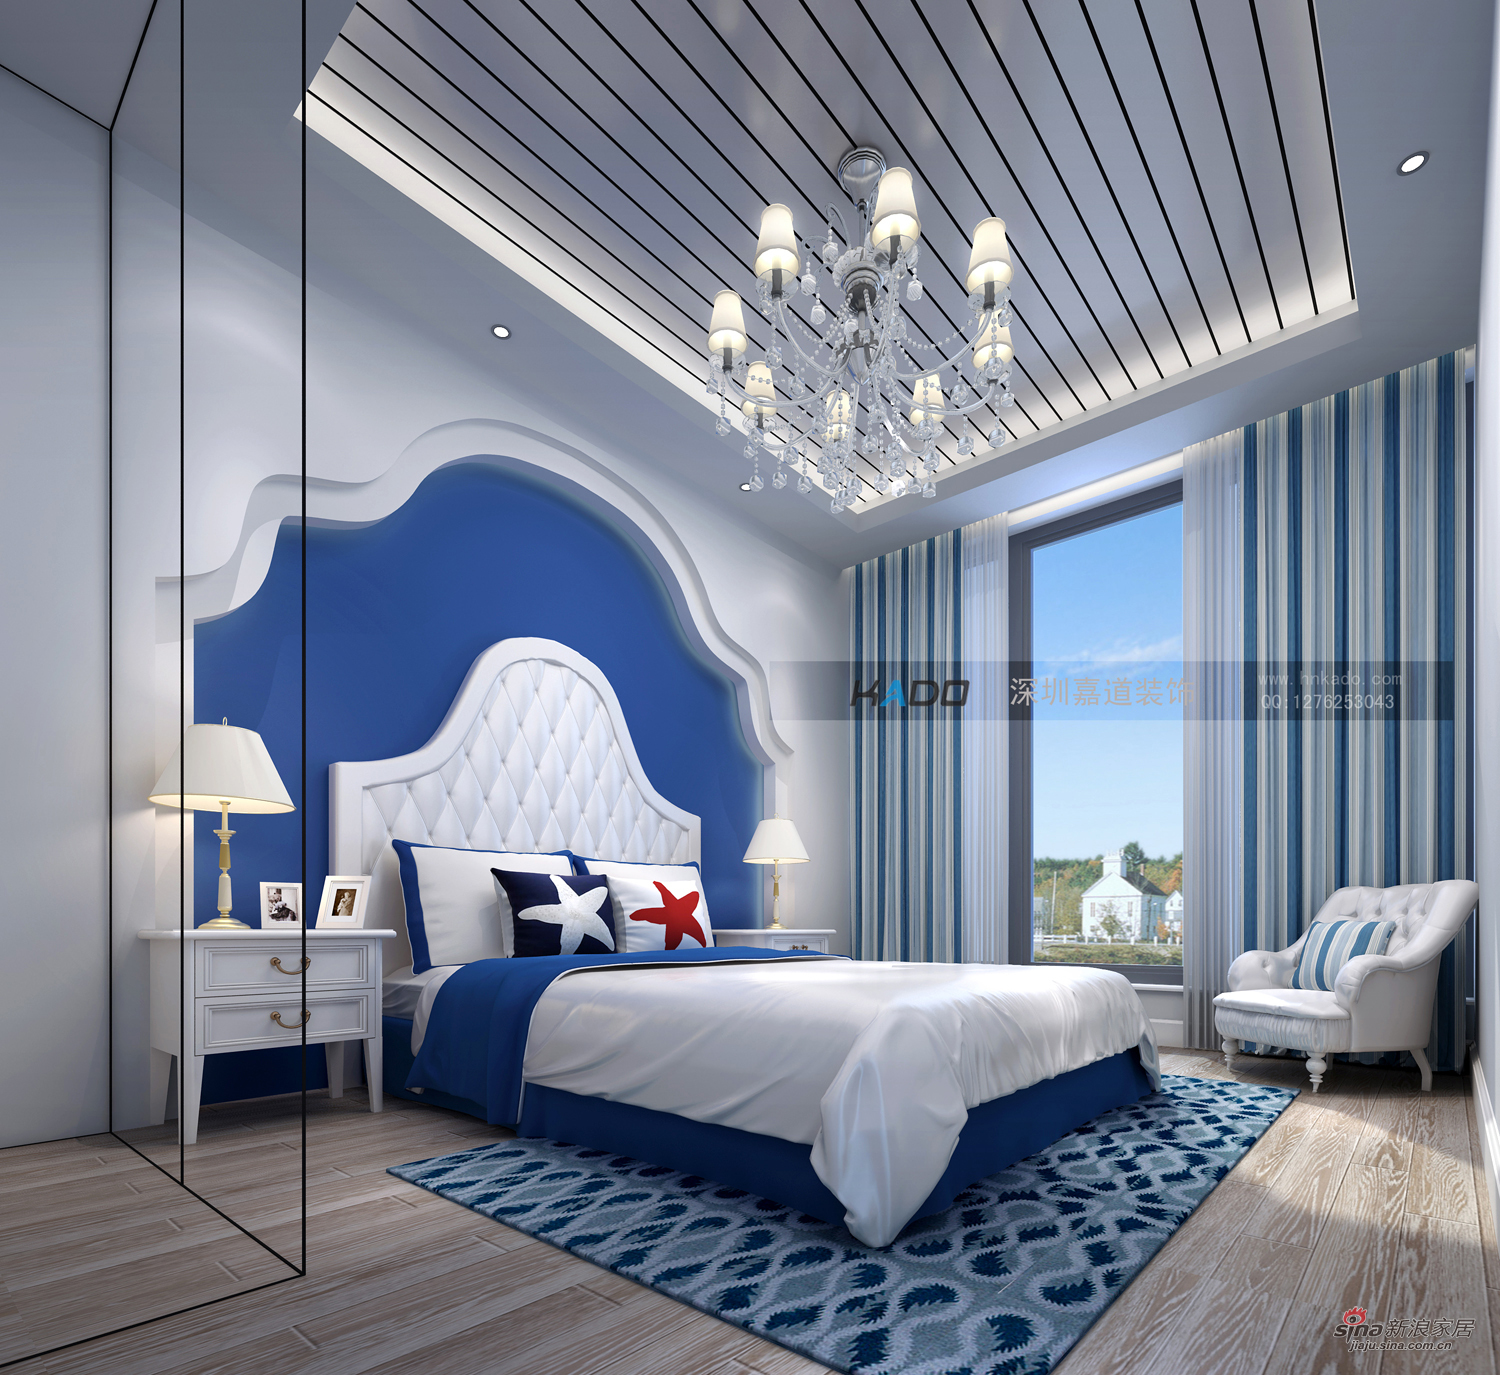 地中海 二居 卧室图片来自用户2756243717在天的蔚蓝--地中海风格效果图55的分享